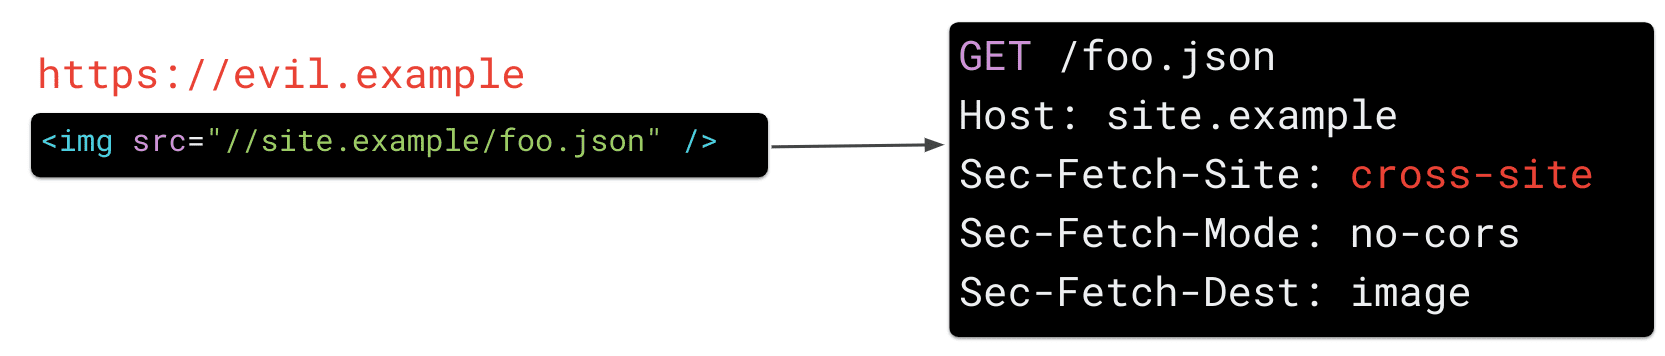 تصویری در https://evil.example که ویژگی src عنصر img را روی "https://site.example/foo.json" تنظیم کرده است باعث می شود مرورگر سرصفحه درخواست HTTP را "Sec-Fetch-Site" ارسال کند: متقابل سایت'.